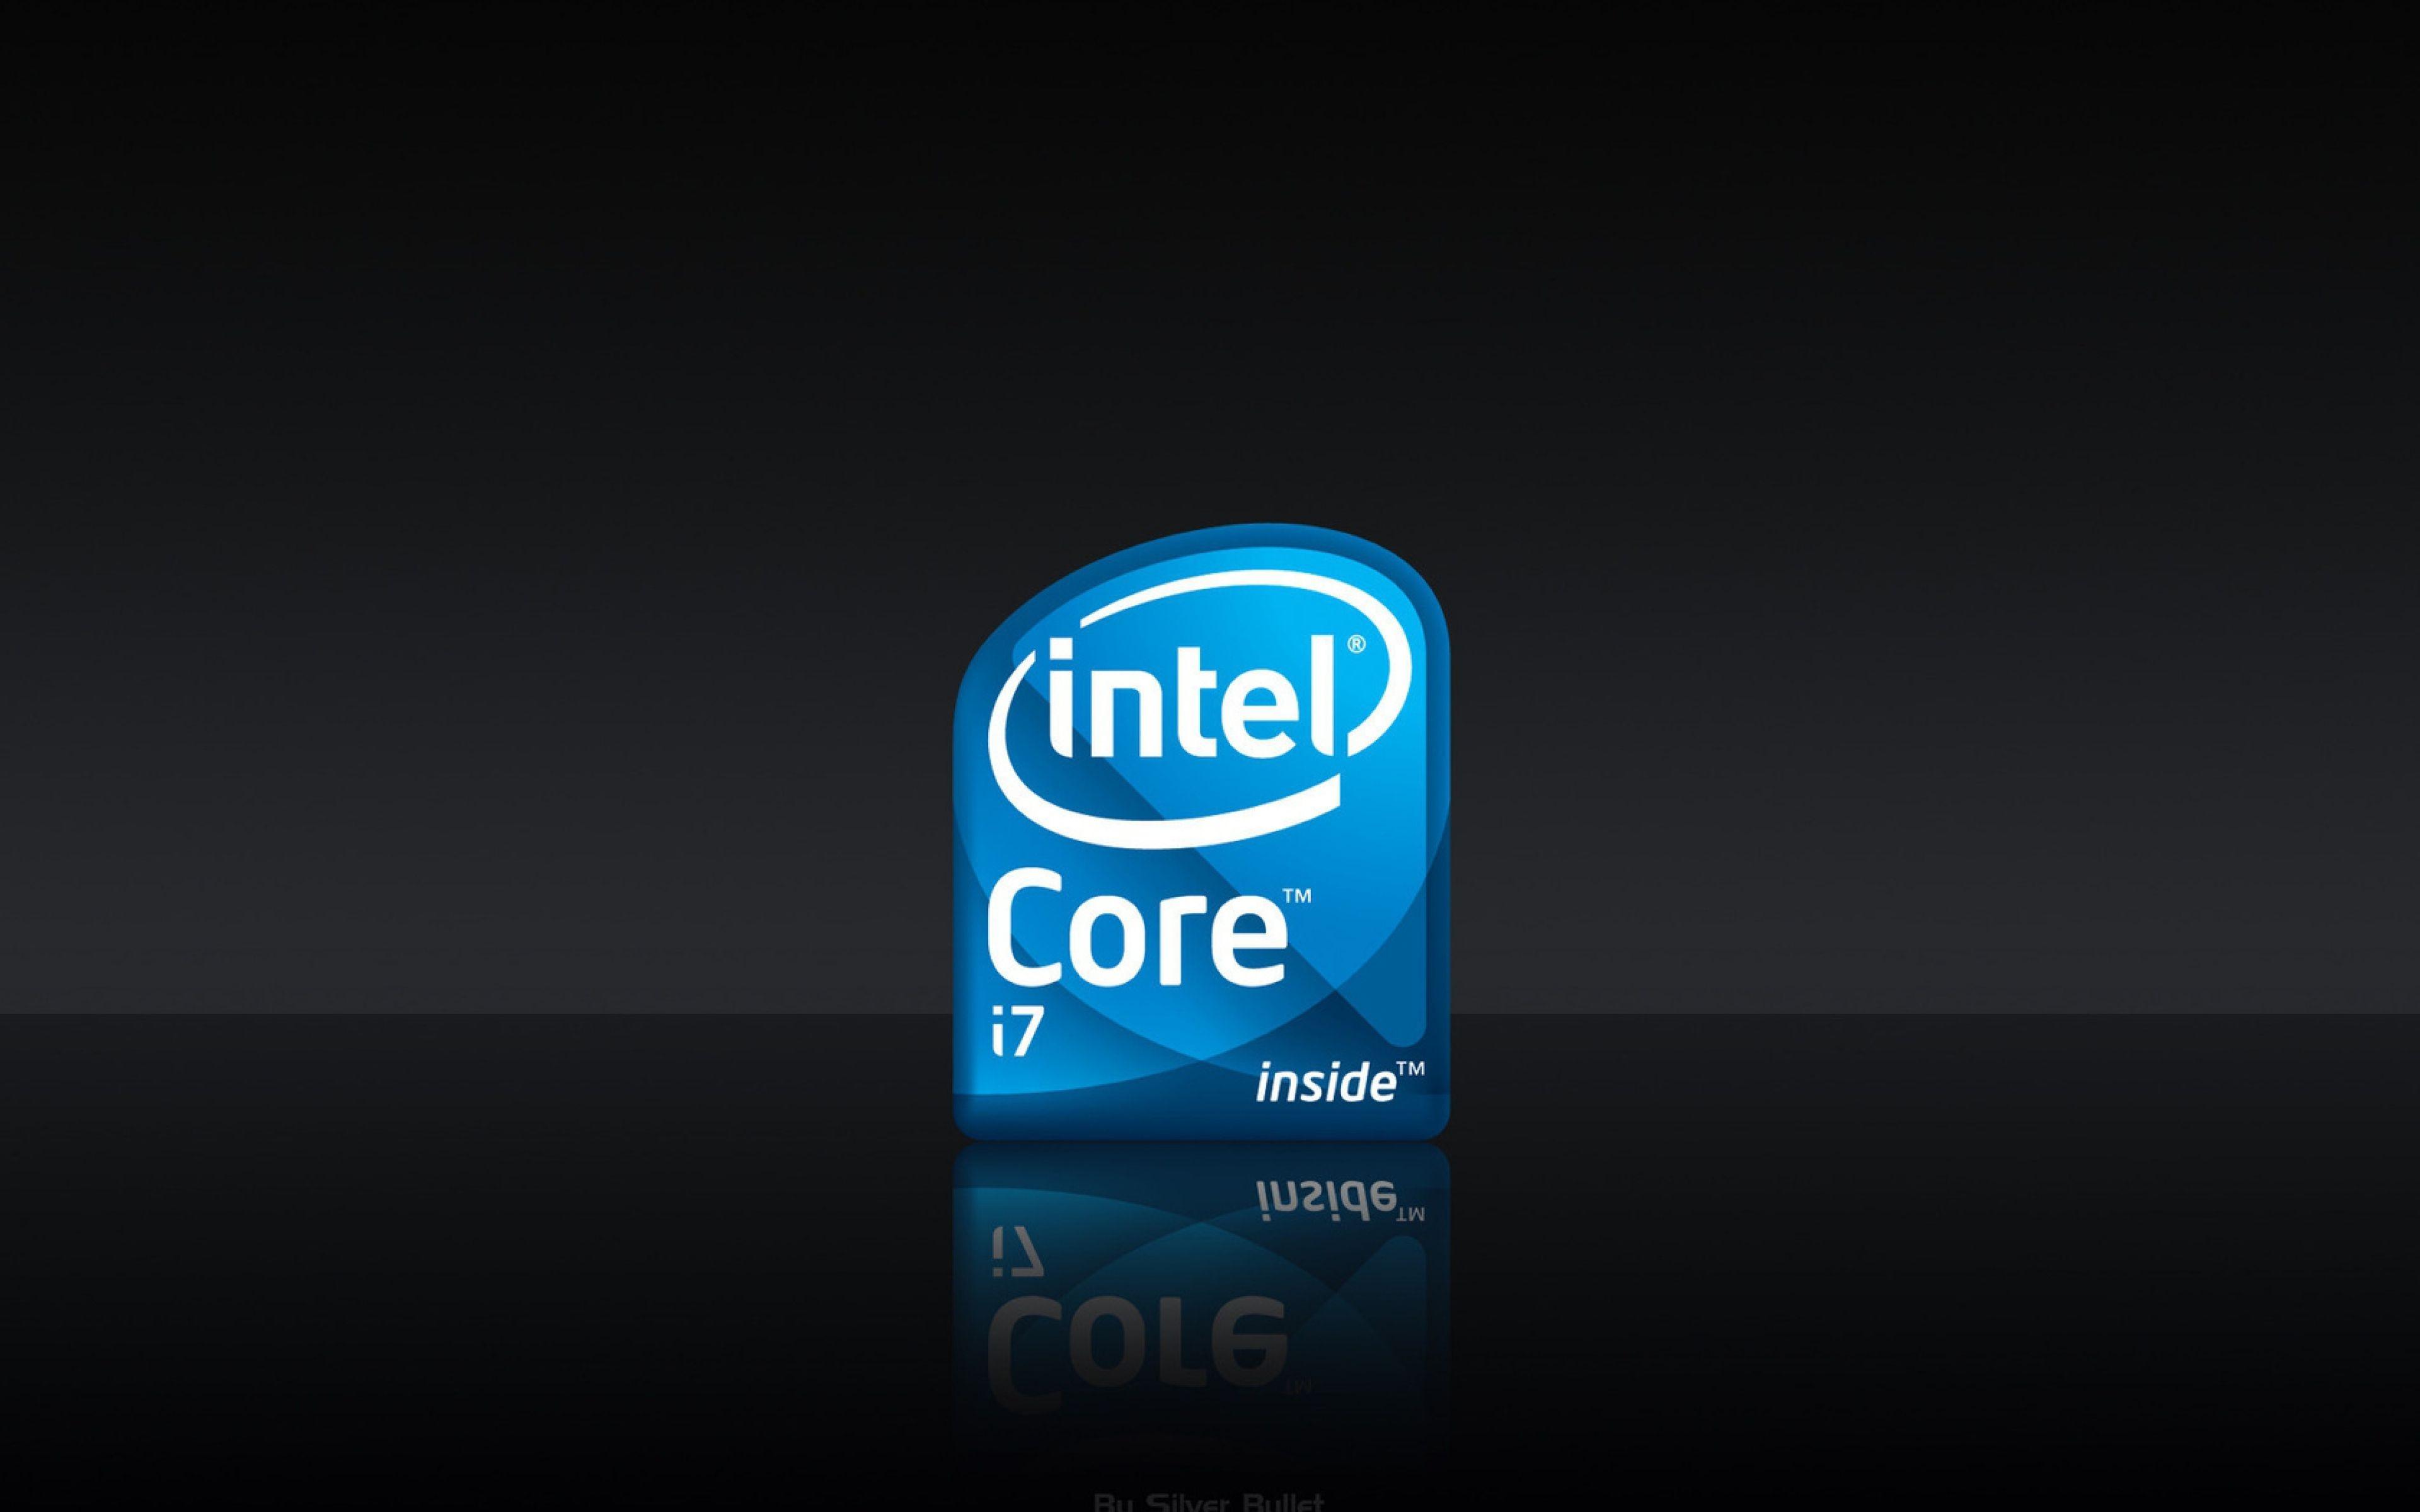 Intel 4K Wallpaper